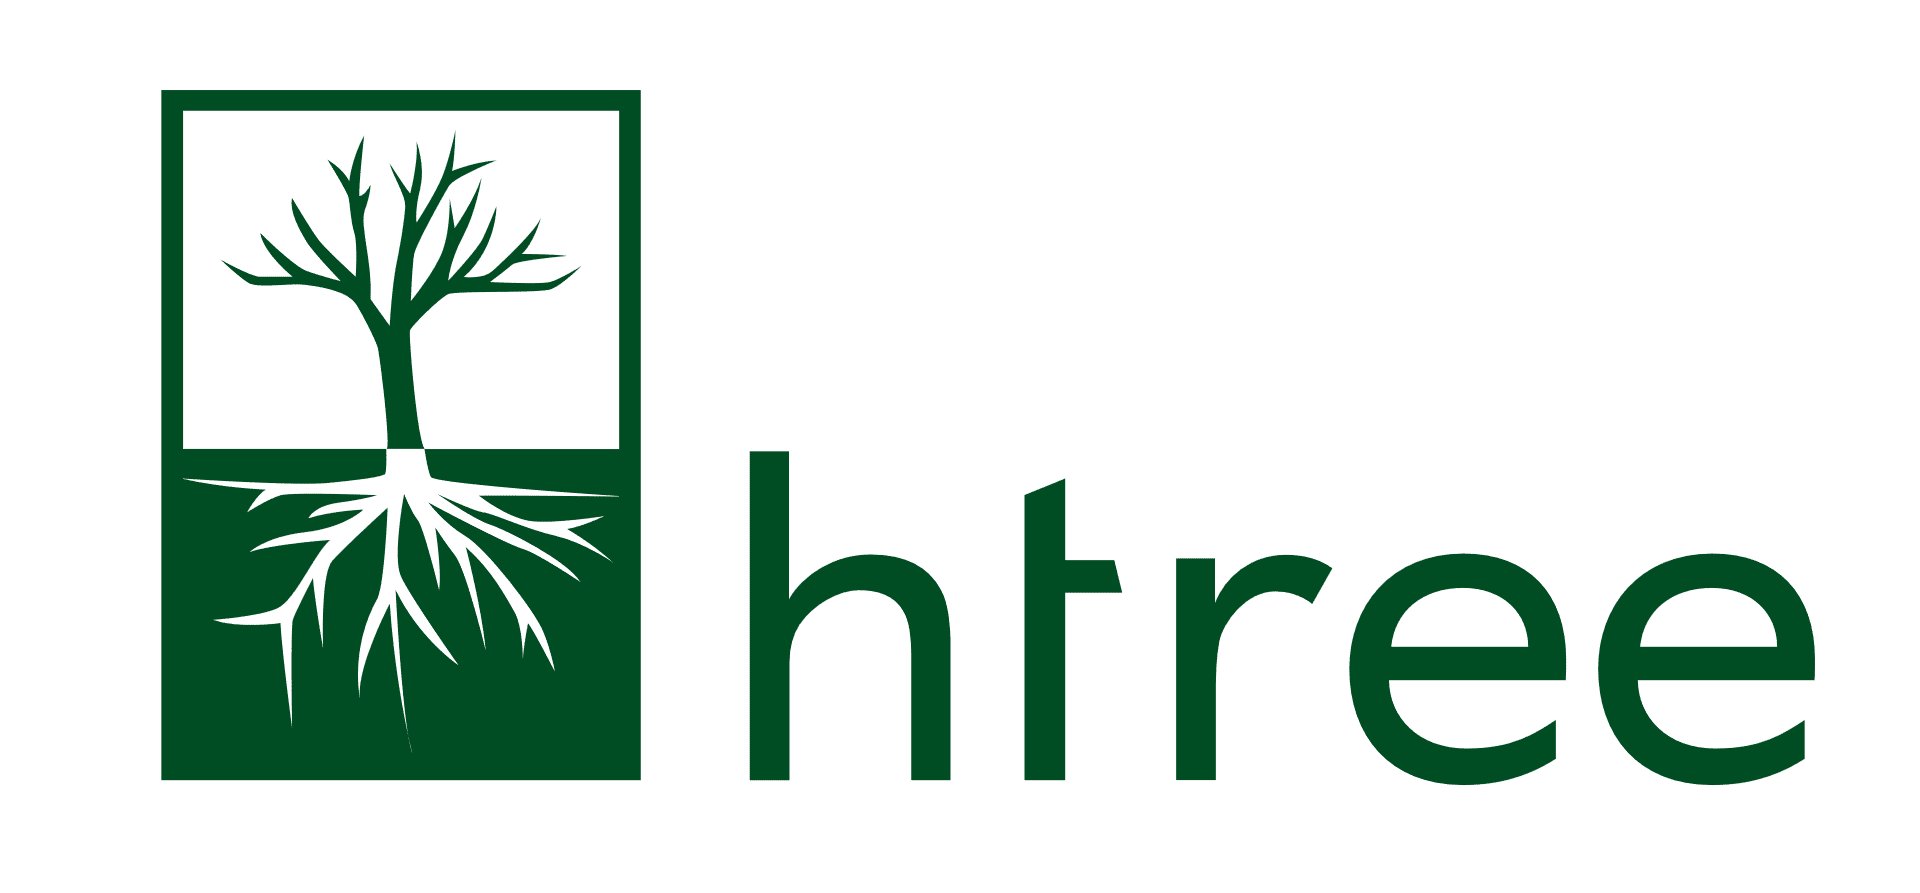 htree logo